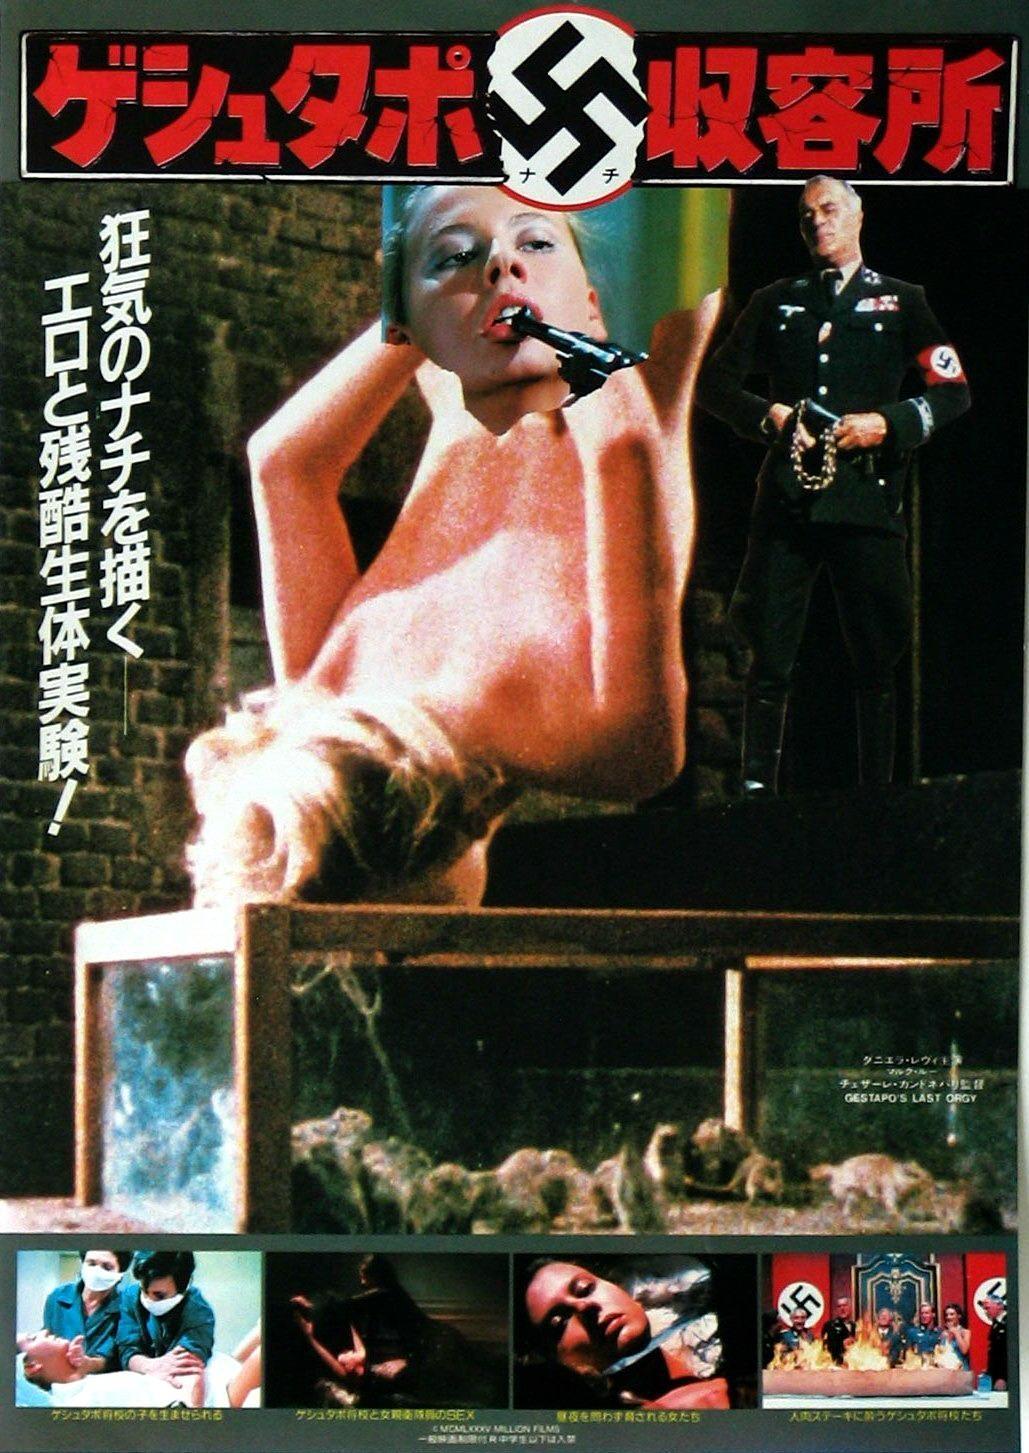 Постер фильма L'ultima orgia del III Reich